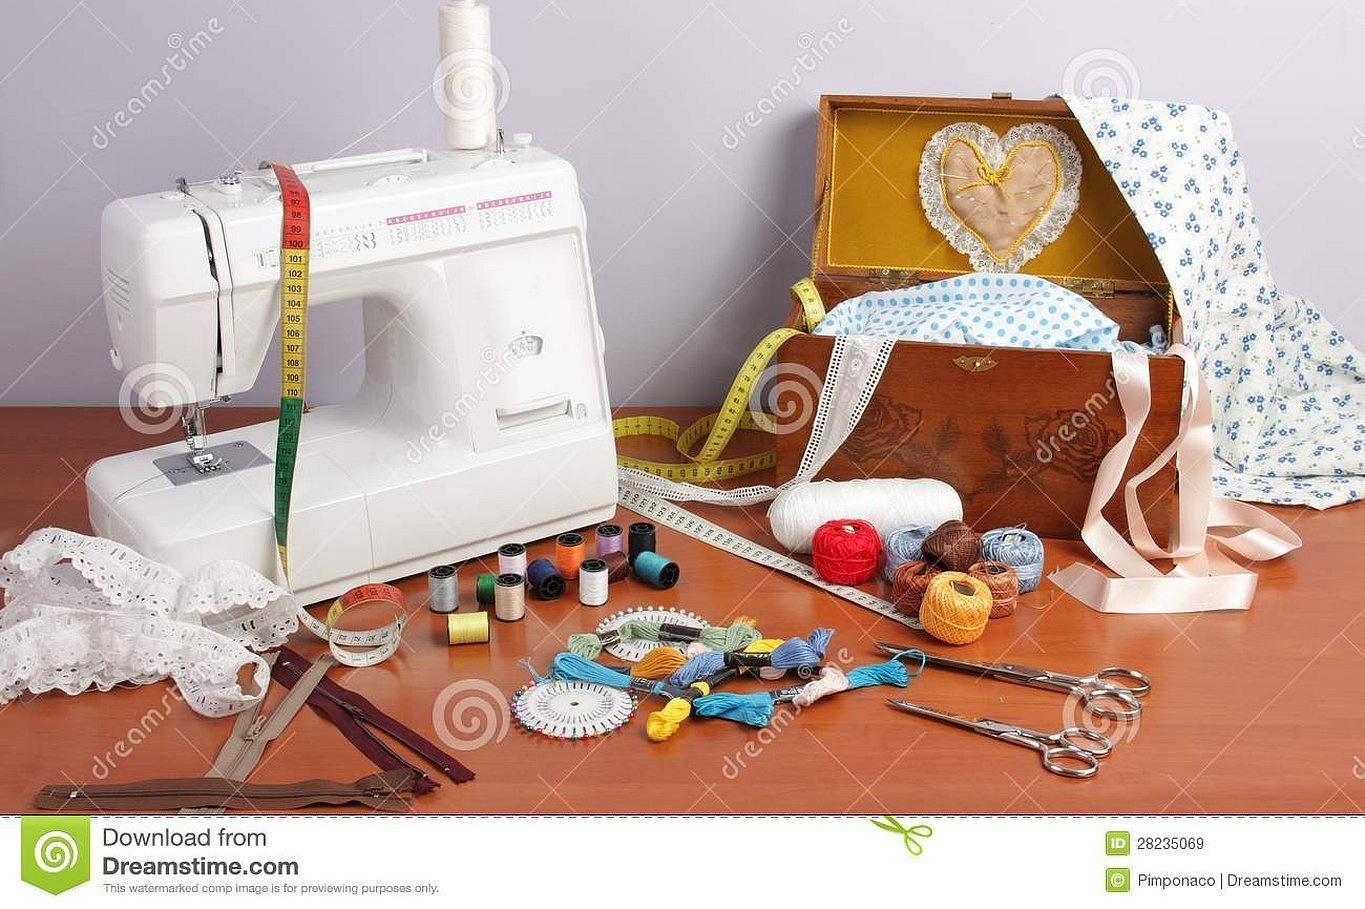 Обслуживание швейной машинки. Инструменты для шитья. Приспособления для шитья и рукоделия. Инструменты швеи. Хобби шитье.